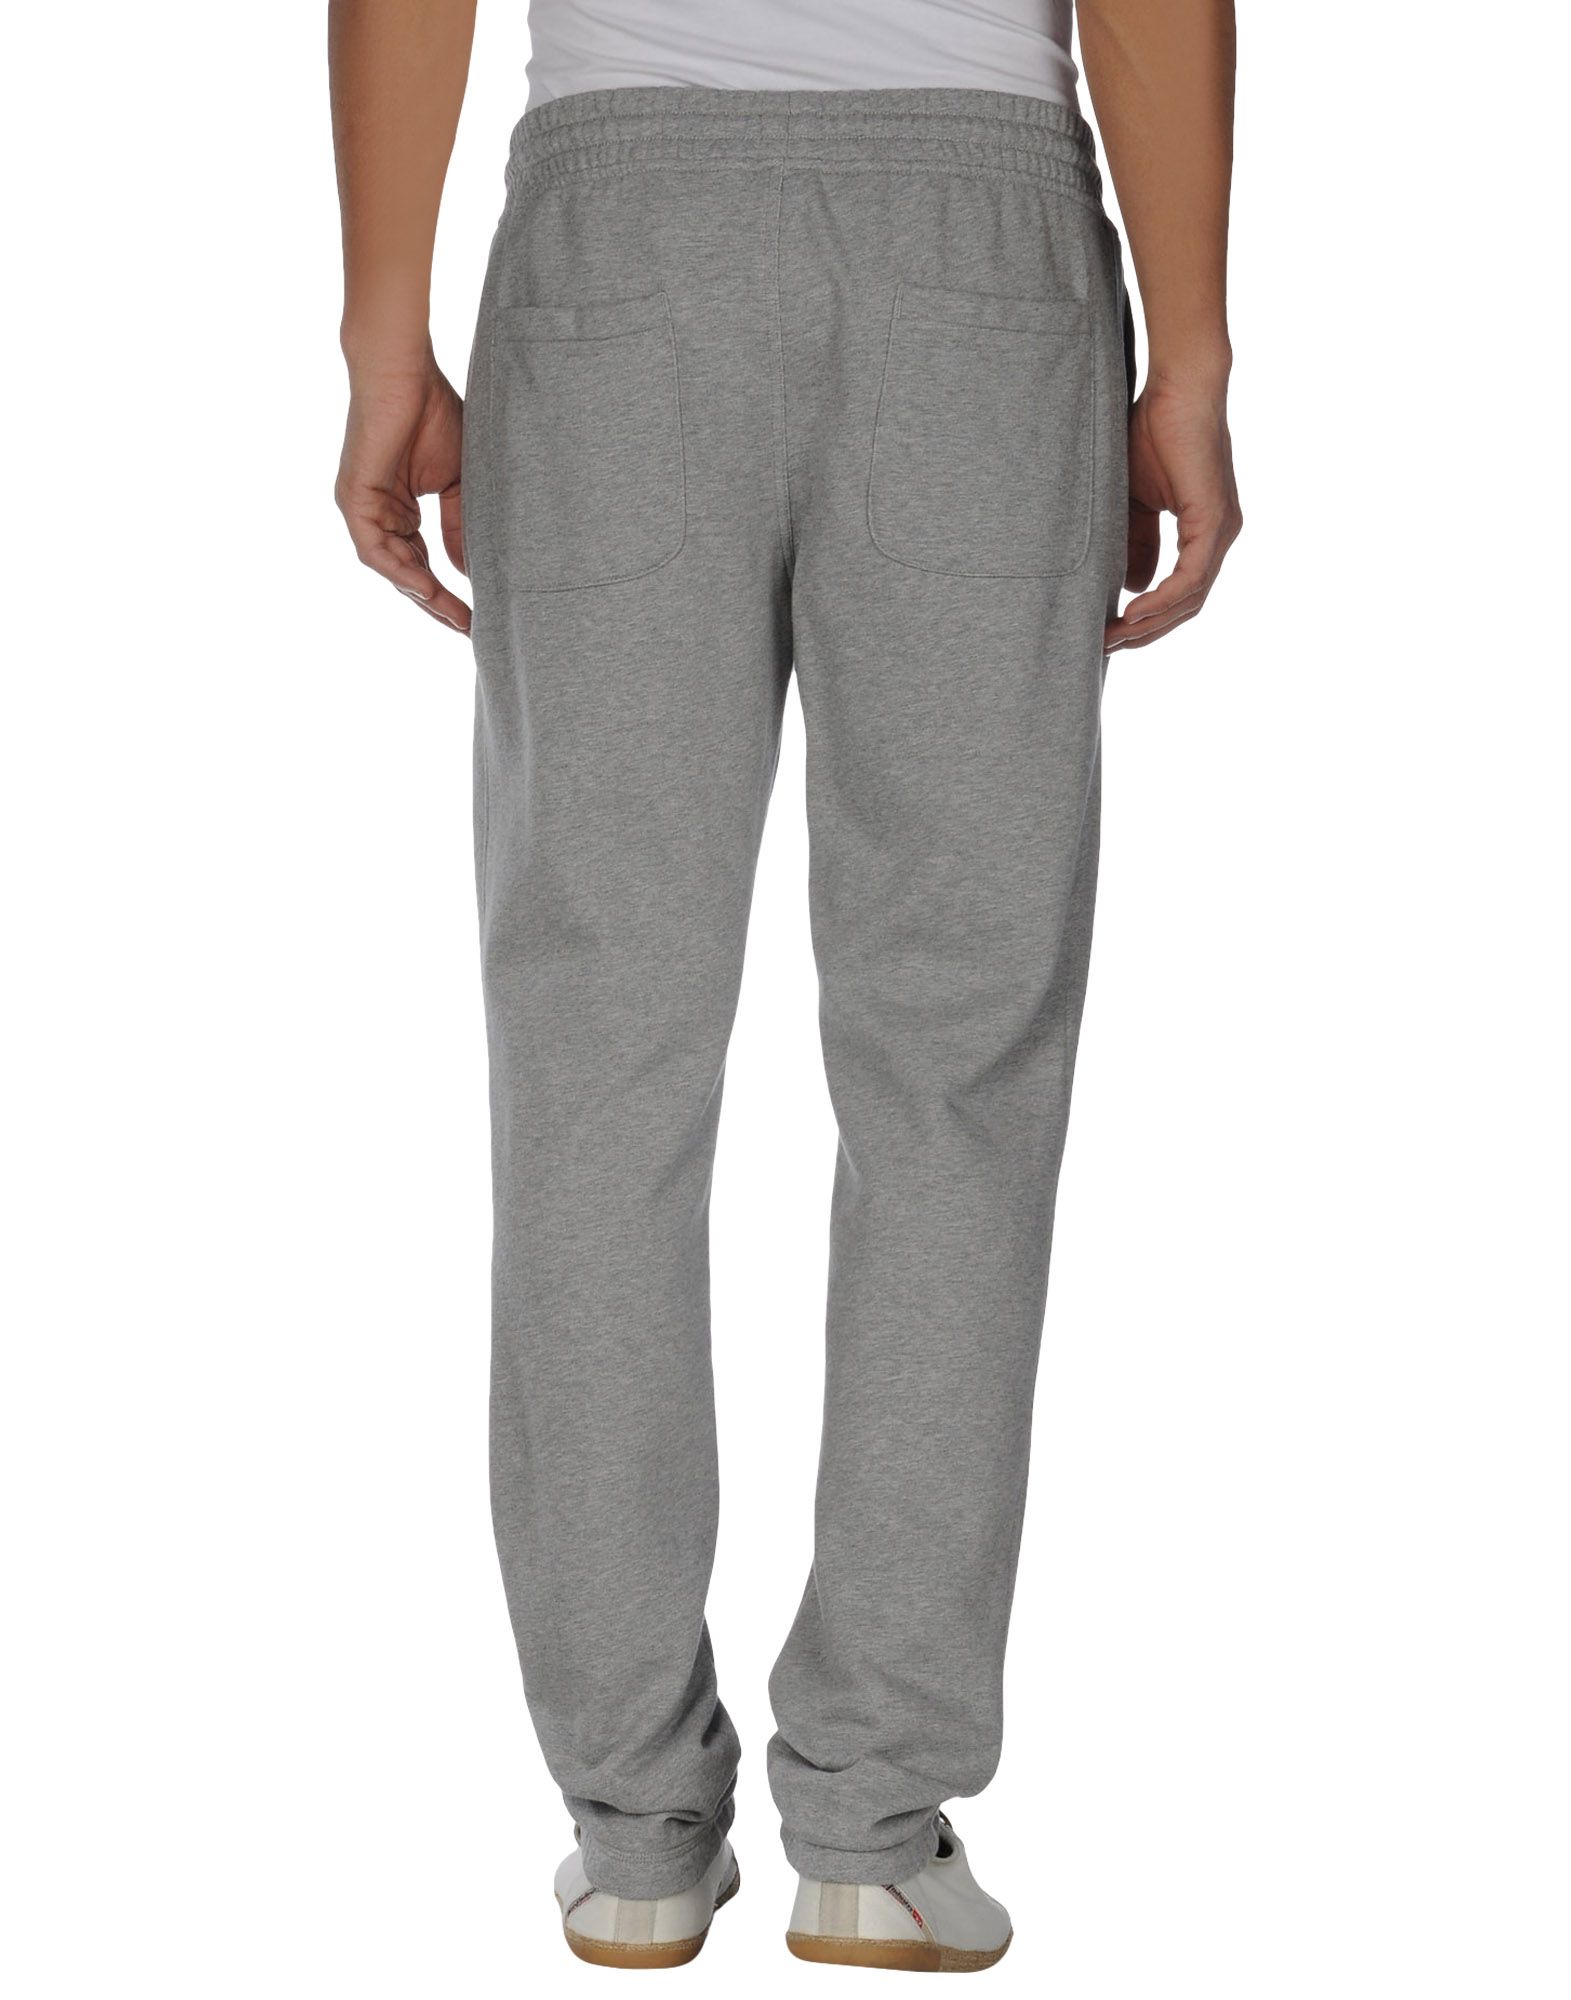 Nike Sweat Pants in Light Grey (Gray) for Men - Lyst